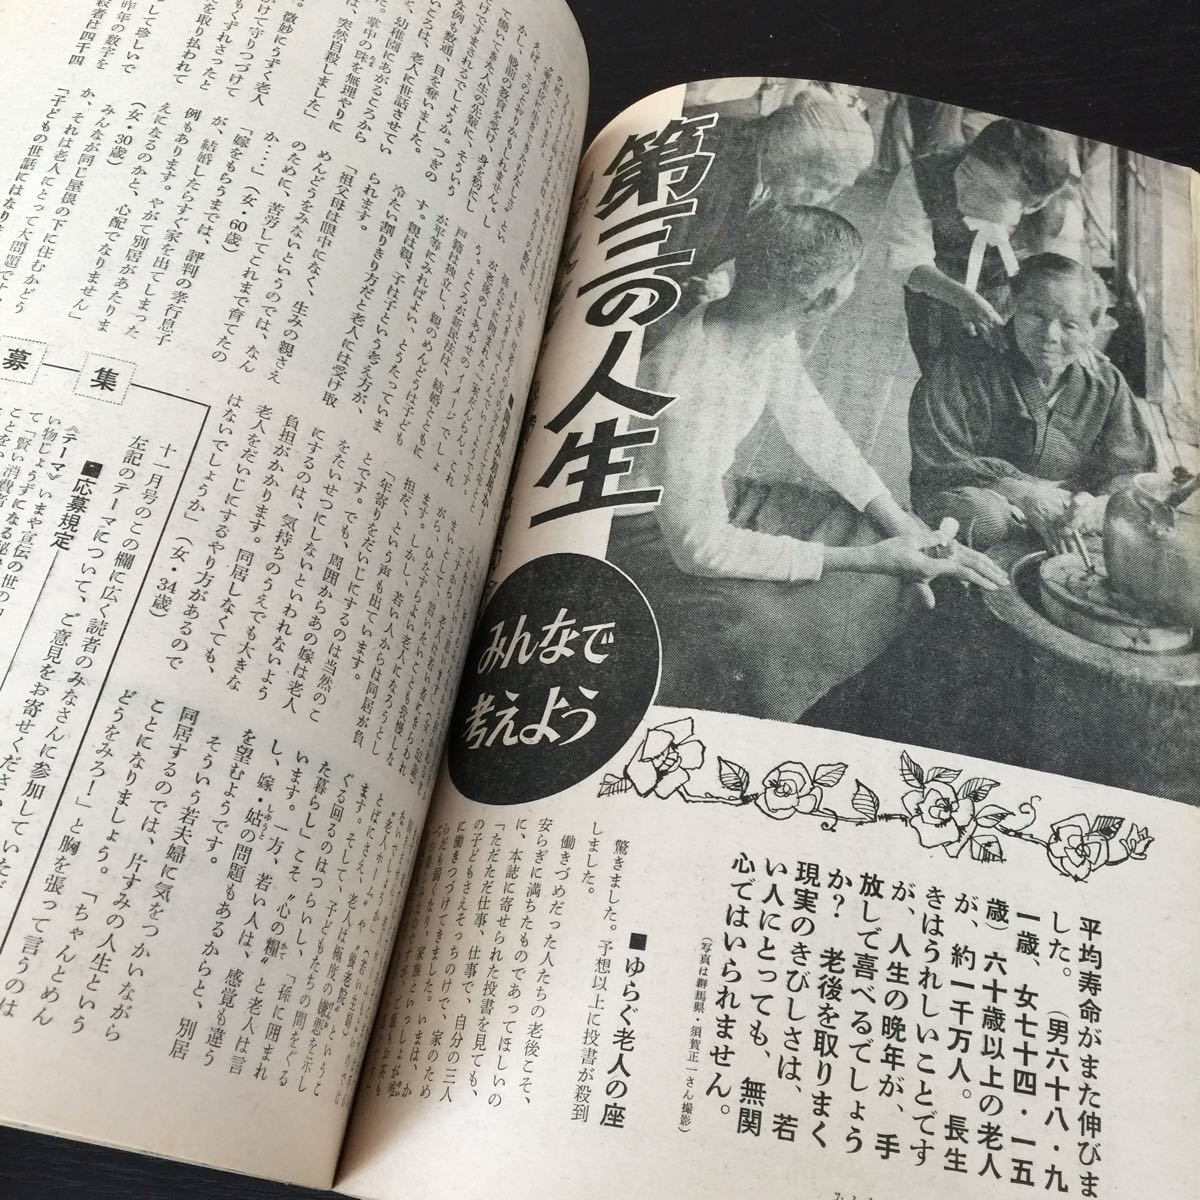 う56 家の光 昭和43年9月1日発行 レトロ 日本 料理 北海道 生活雑誌 主婦 暮らし 農業 婦人 雑誌 農協 家計簿 明治 編み物 第3の人生 病気_画像7